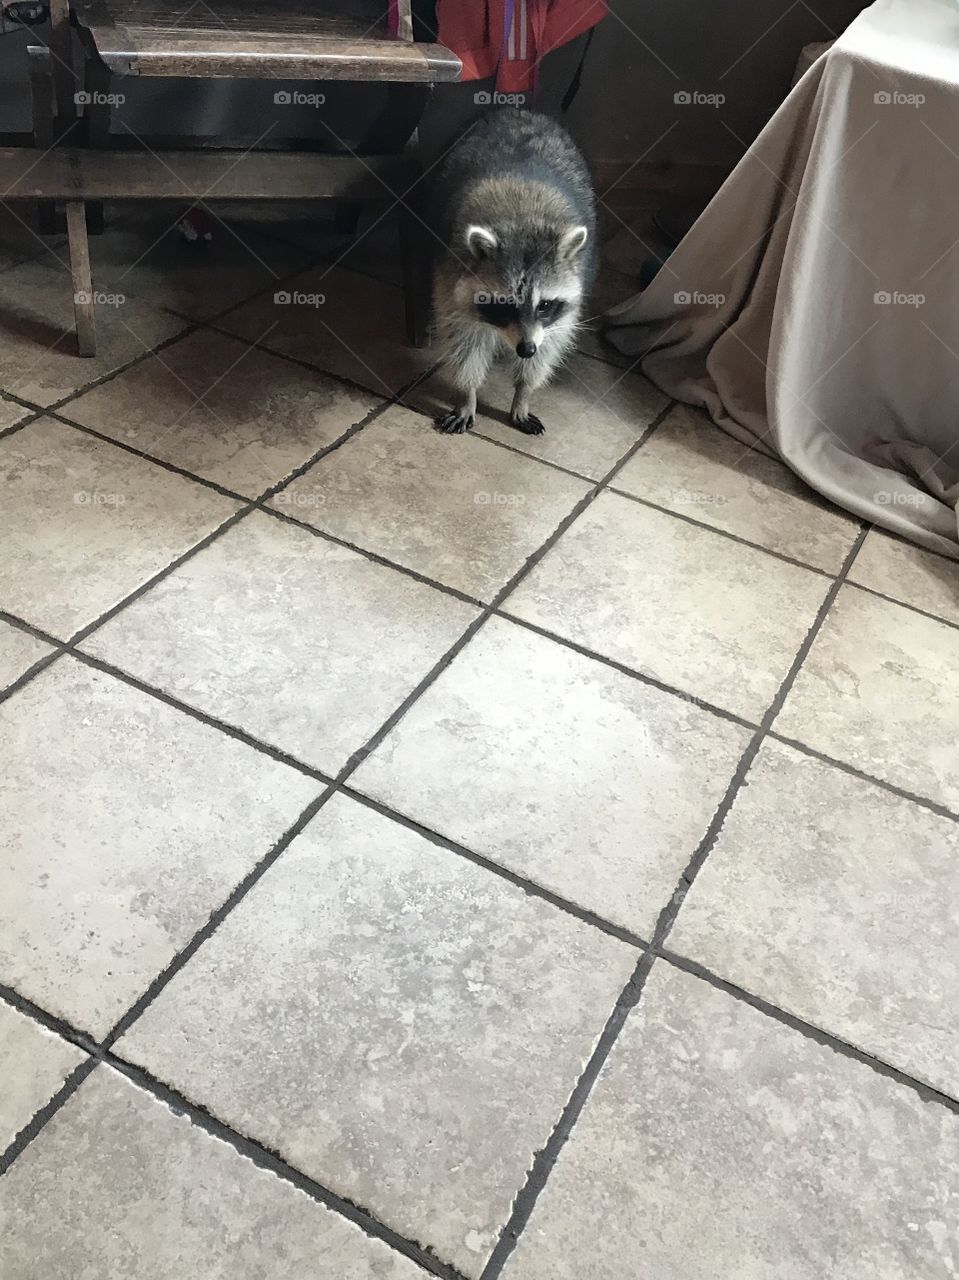 Pet Raccoon inside